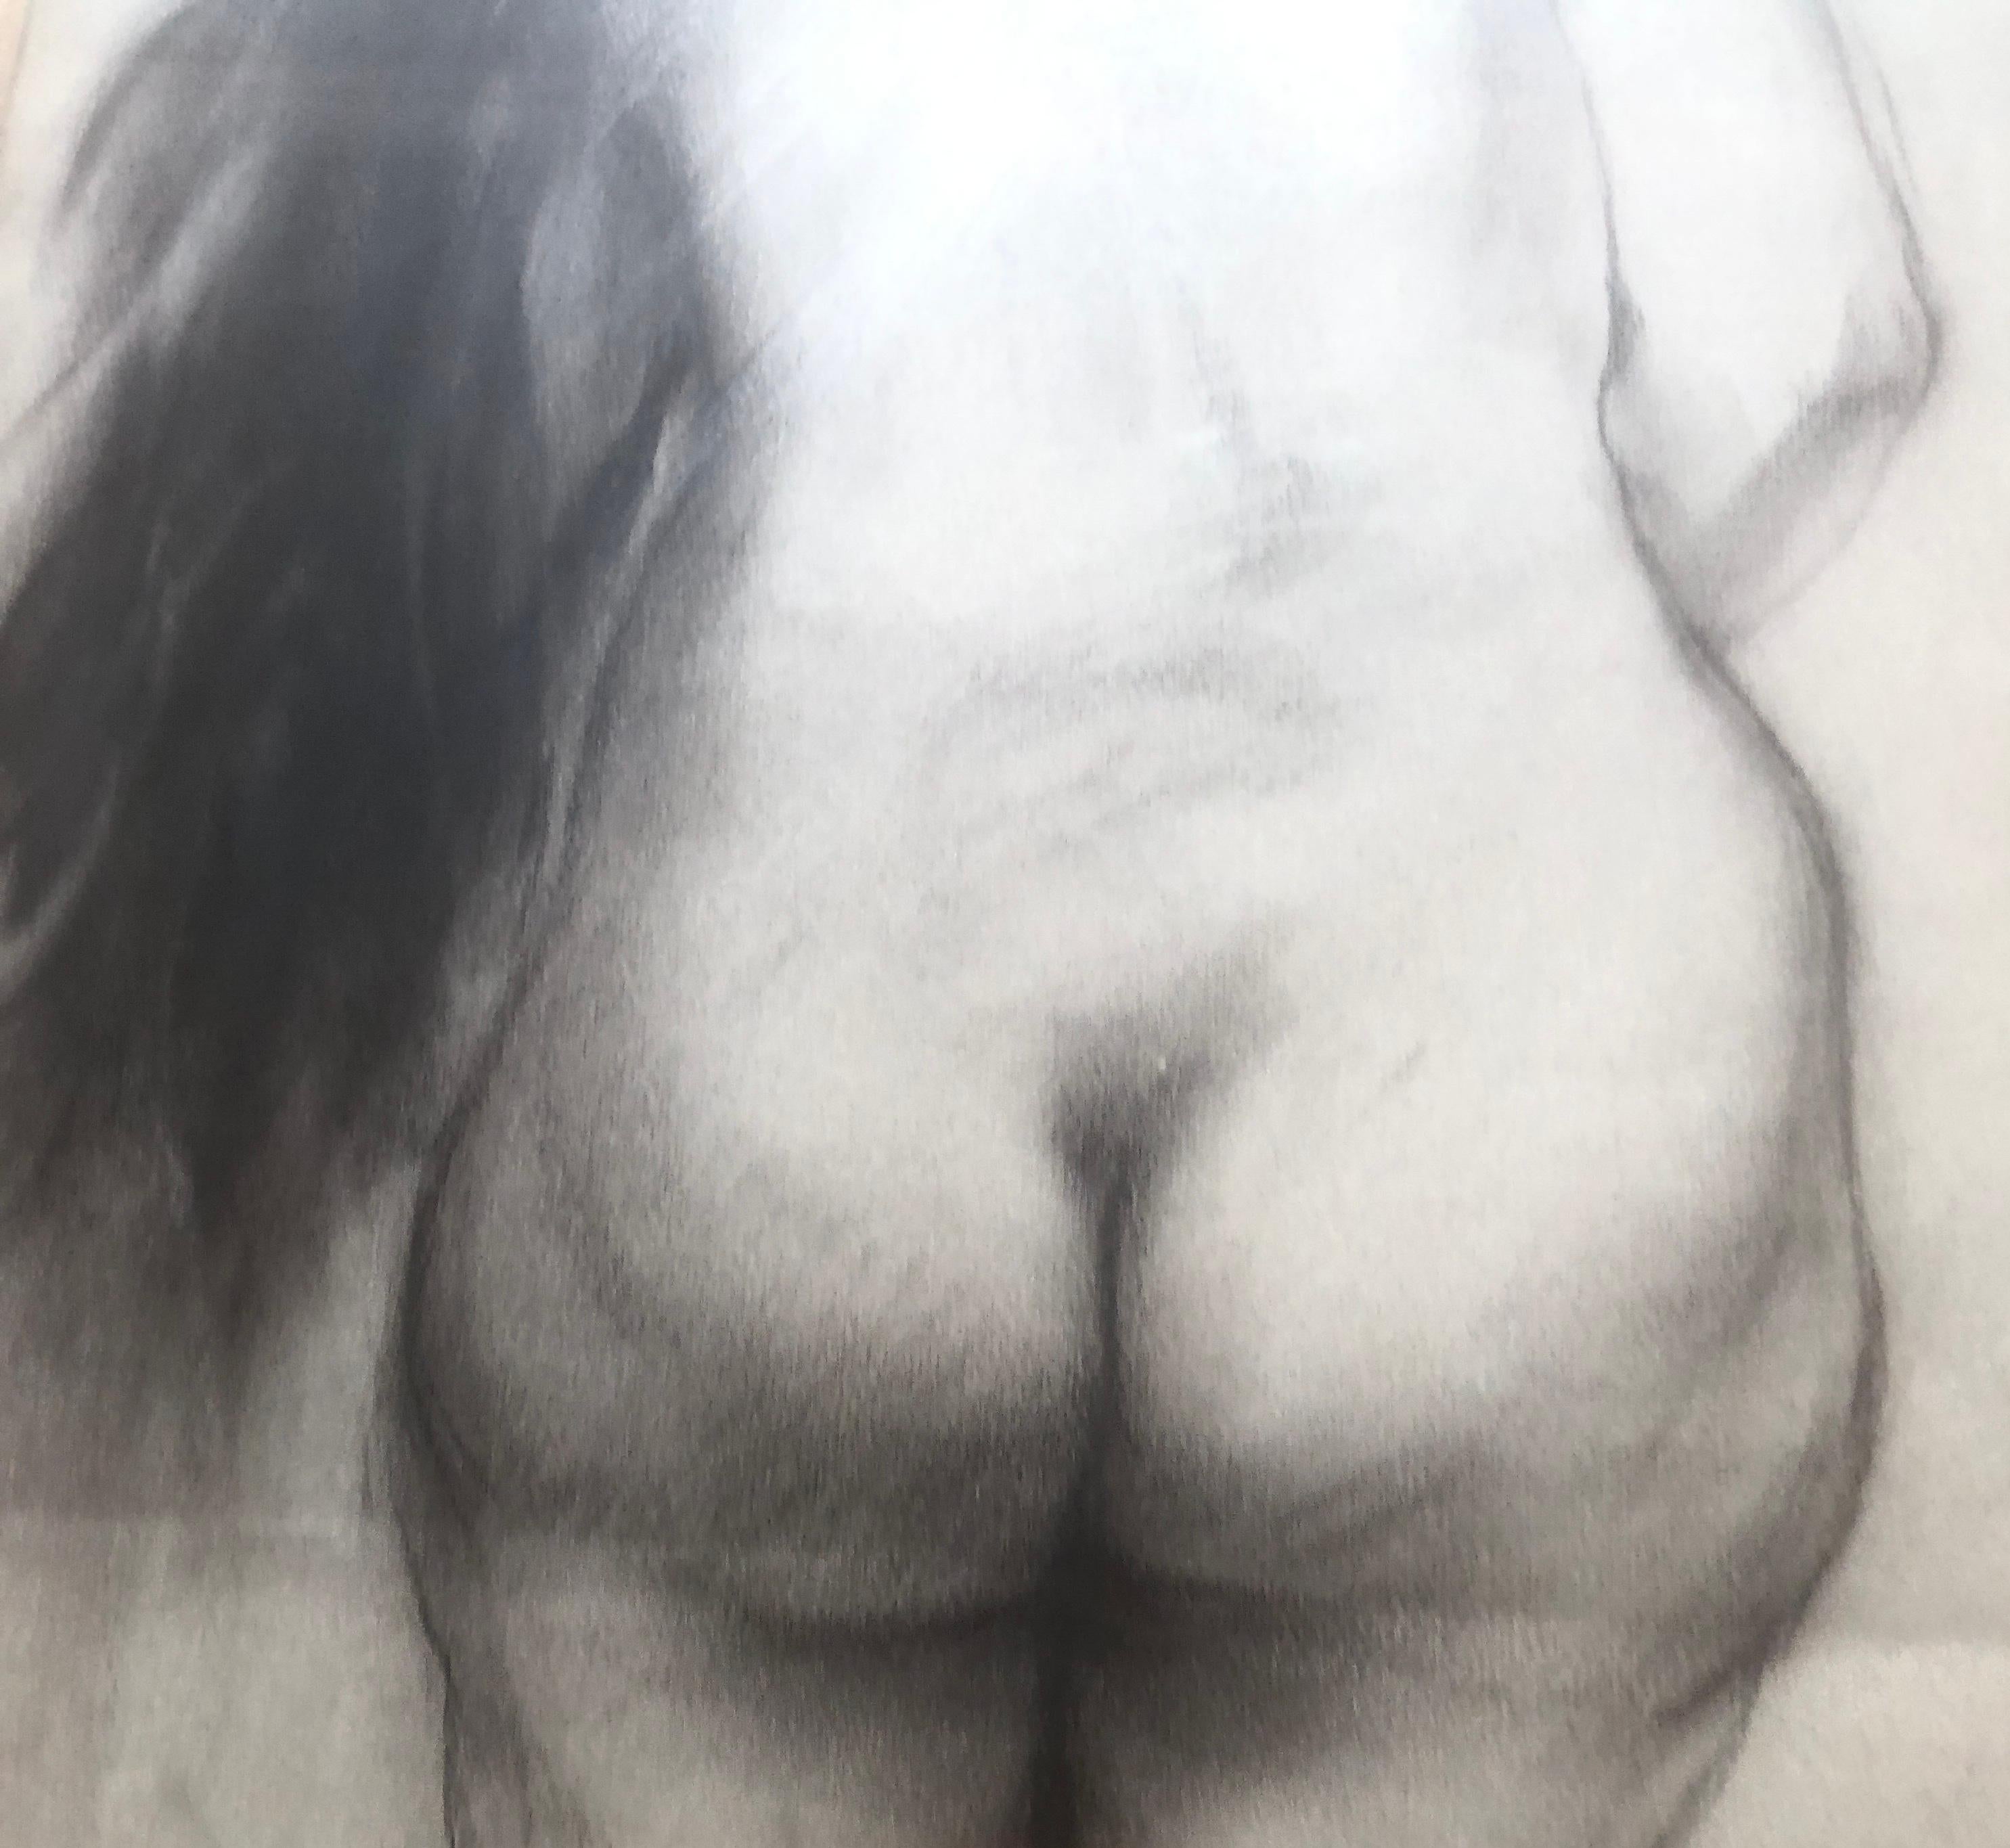 José Luis Fuentetaja (1951) - Femme nue - Dessin au fusain
Dessin de 48x32 cm.
Dimensions du cadre 69x53 cm.

Née à Madrid le 21 juillet 1951.
Après avoir fréquenté l'école primaire, il commence à développer un énorme penchant pour le dessin. 
À